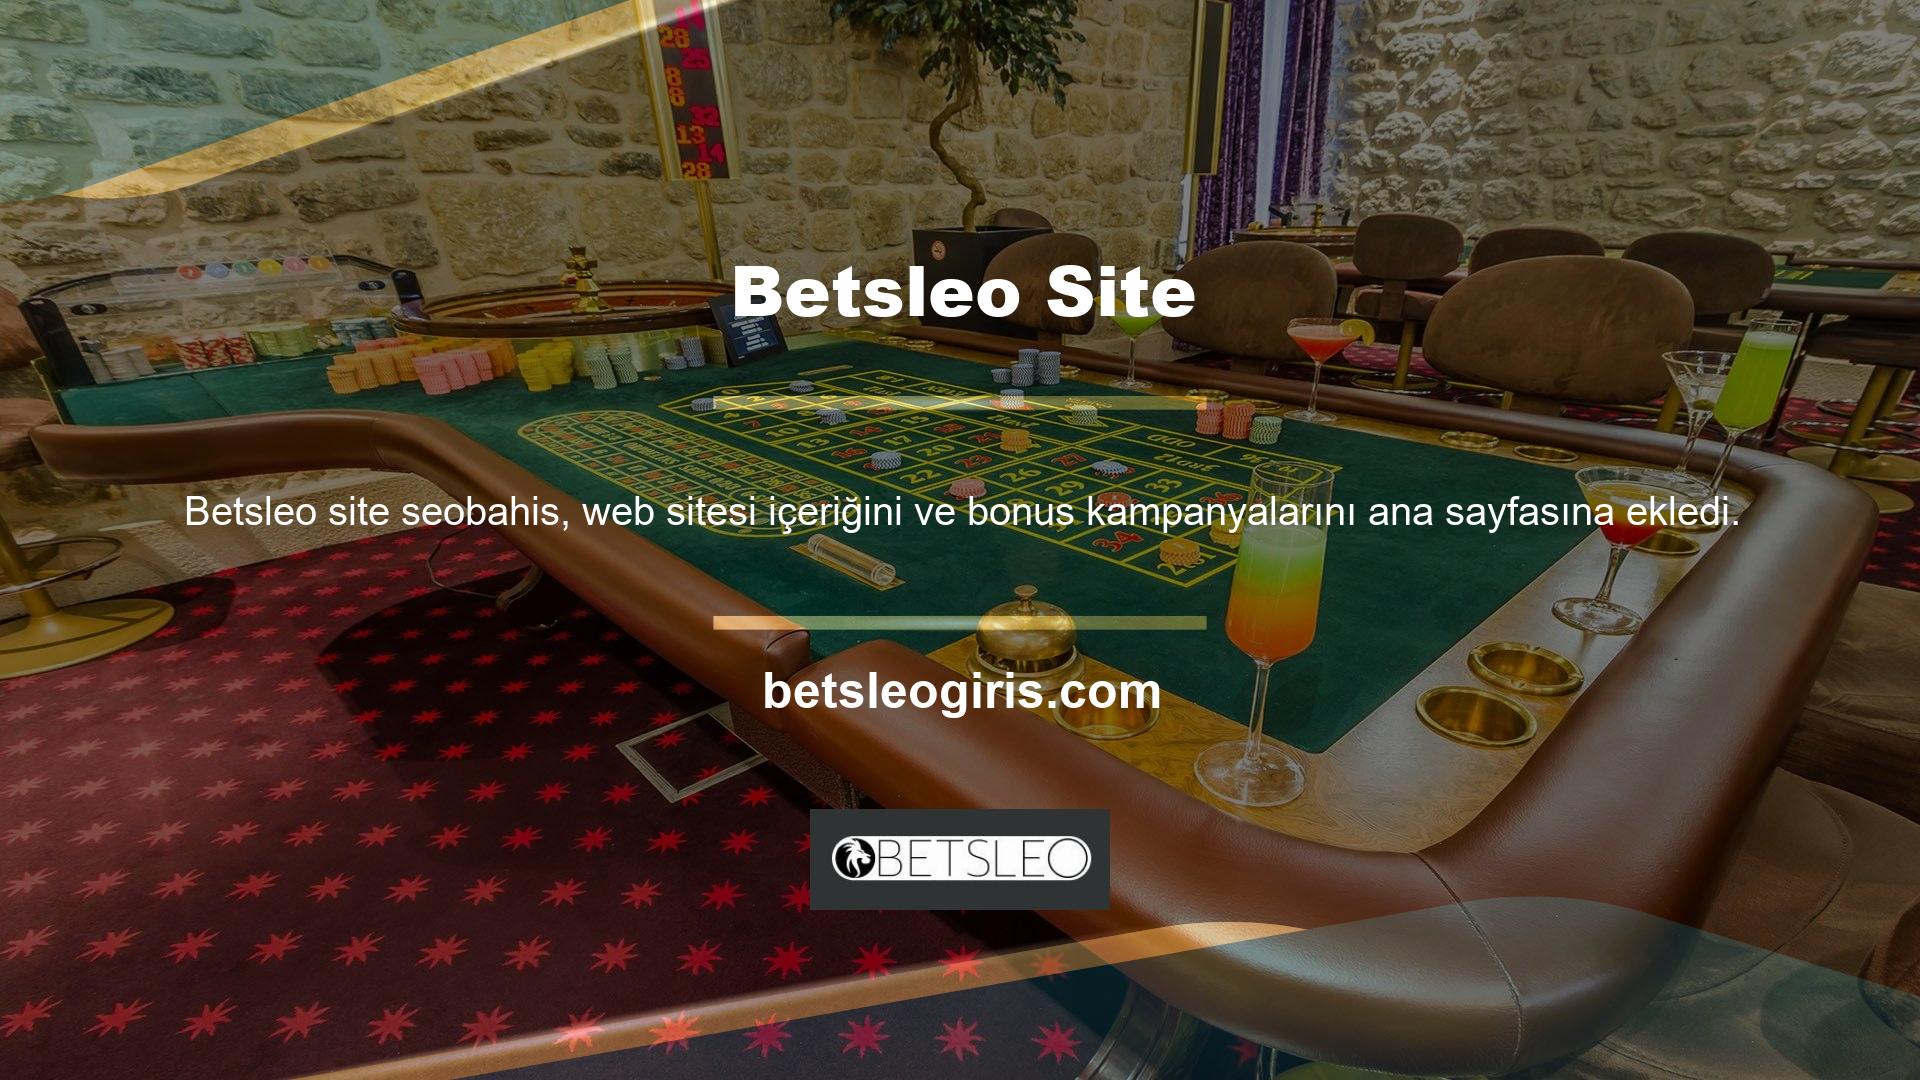 Site, oyun ve casino kategorisinde faaliyet göstermekte ve ayrıca kullanıcılarına özel hediye promosyonları düzenlemektedir